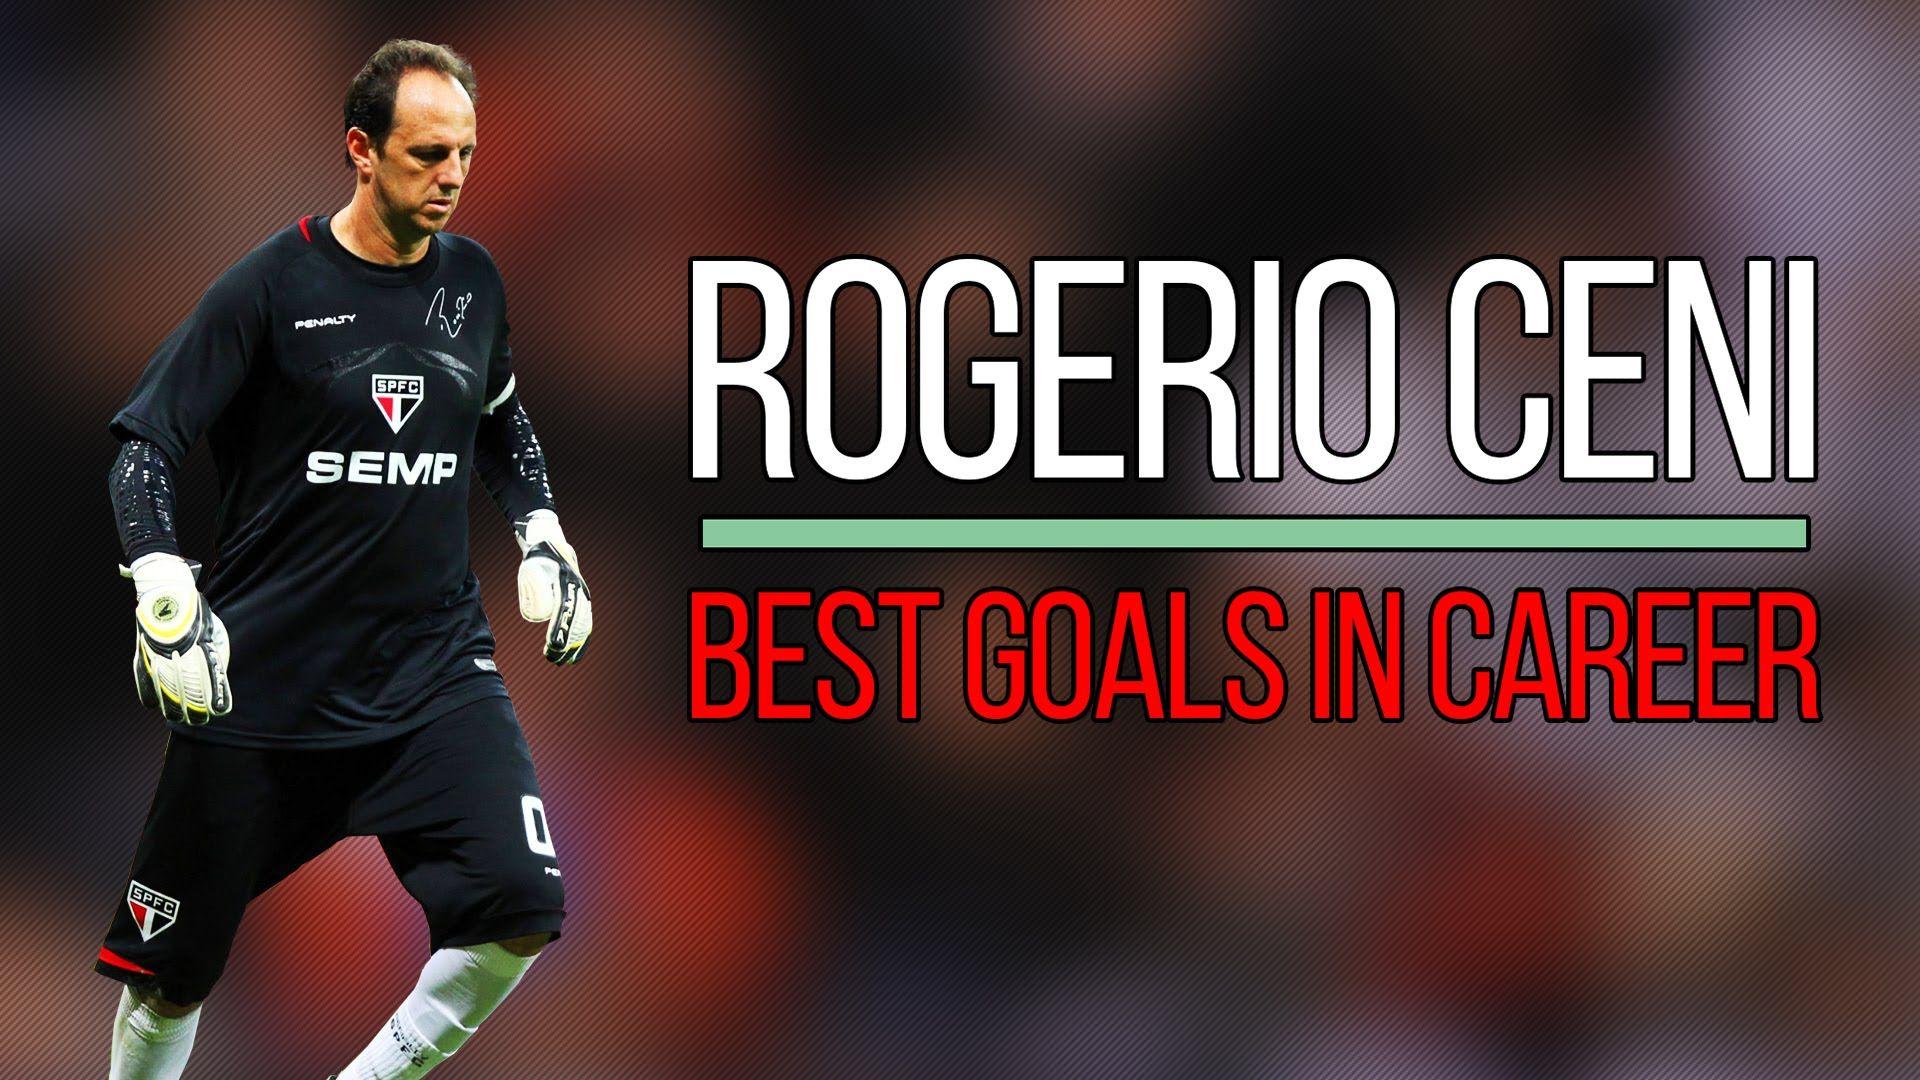 Rogerio Ceni ○ Best Goals In Career